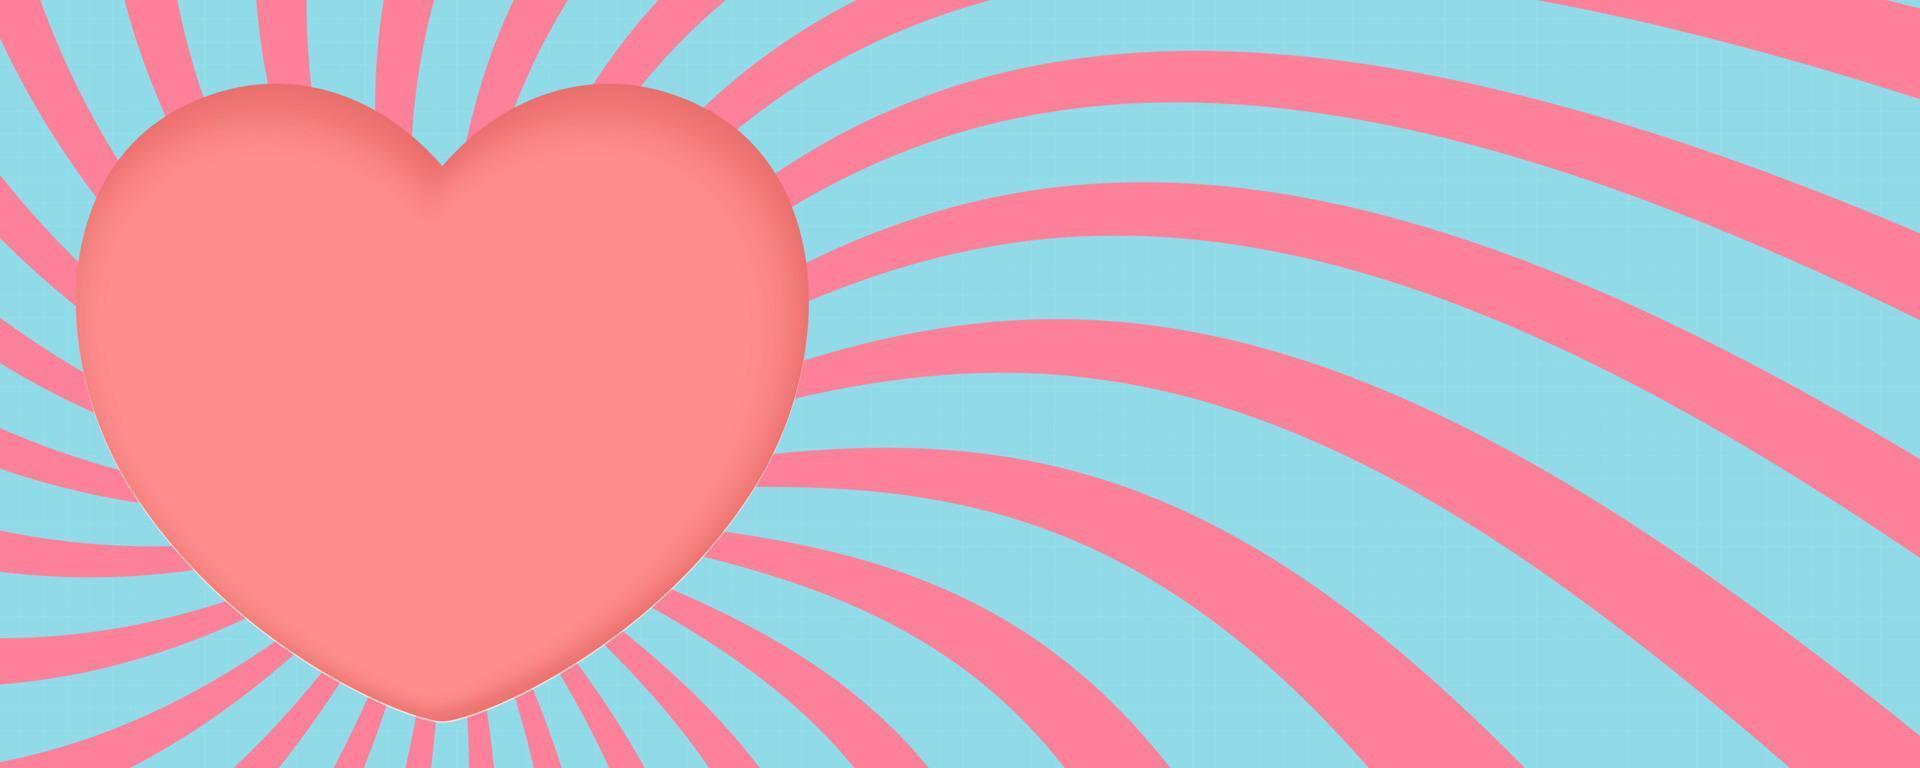 papper skära begrepp i form av rosa hjärta på sunburst bakgrund. vektor symboler av kärlek för Lycklig kvinnors, mammas, hjärtans dag, födelsedag hälsning kort design.